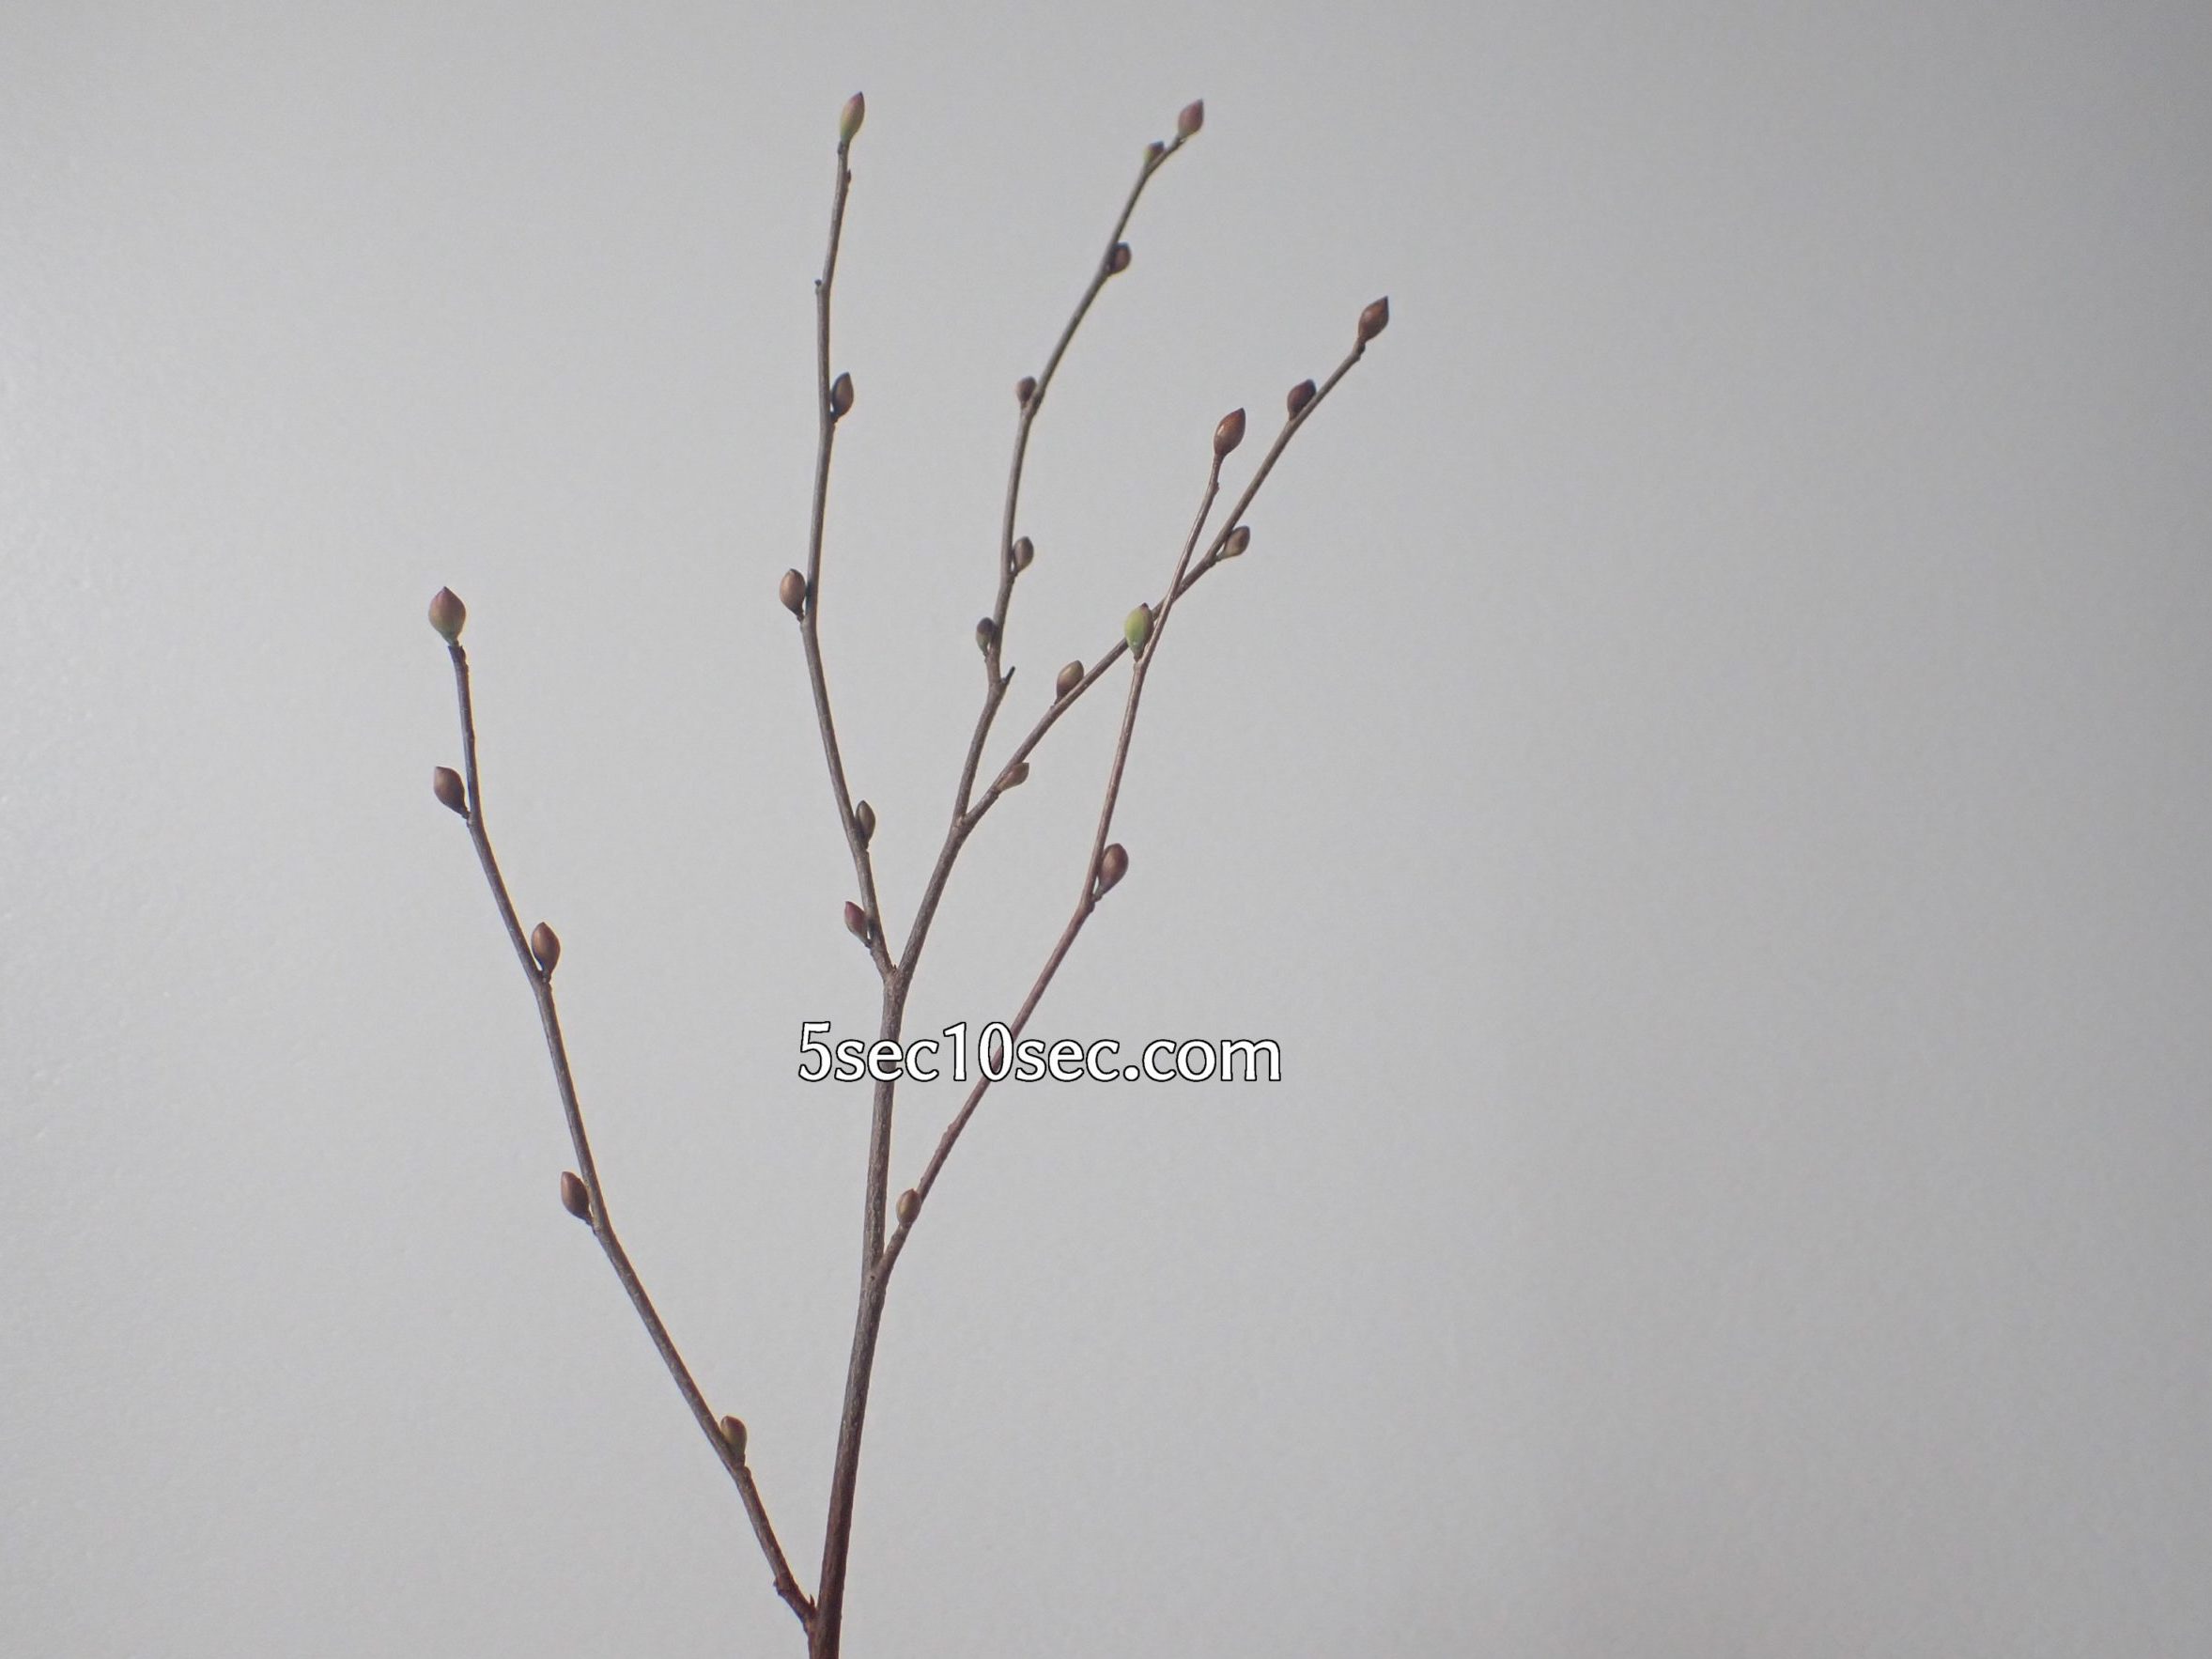 株式会社Crunch Style お花の定期便 Bloomee LIFE ブルーミーライフ レギュラープラン　写真を素材化する方法